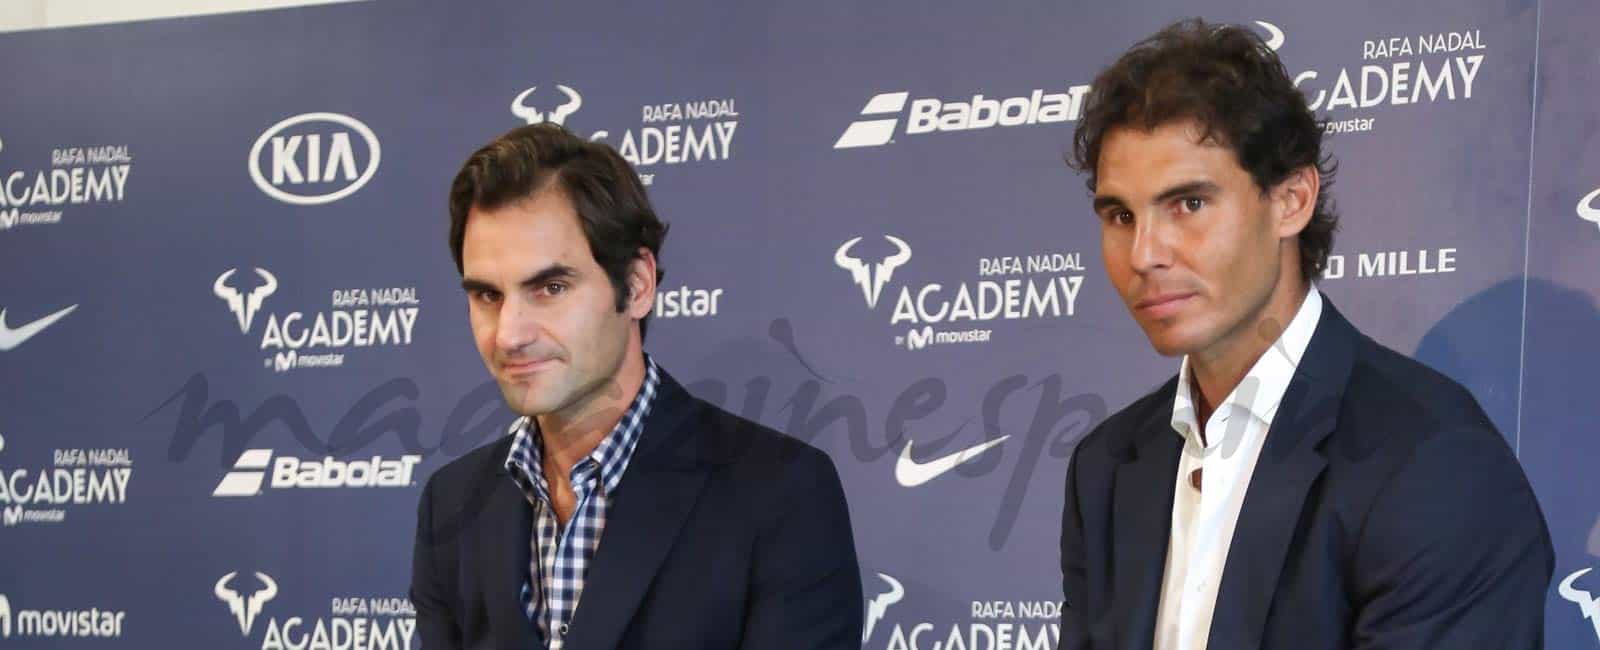 Rafa Nadal y Roger Federer, inauguran la escuela de tenis del español